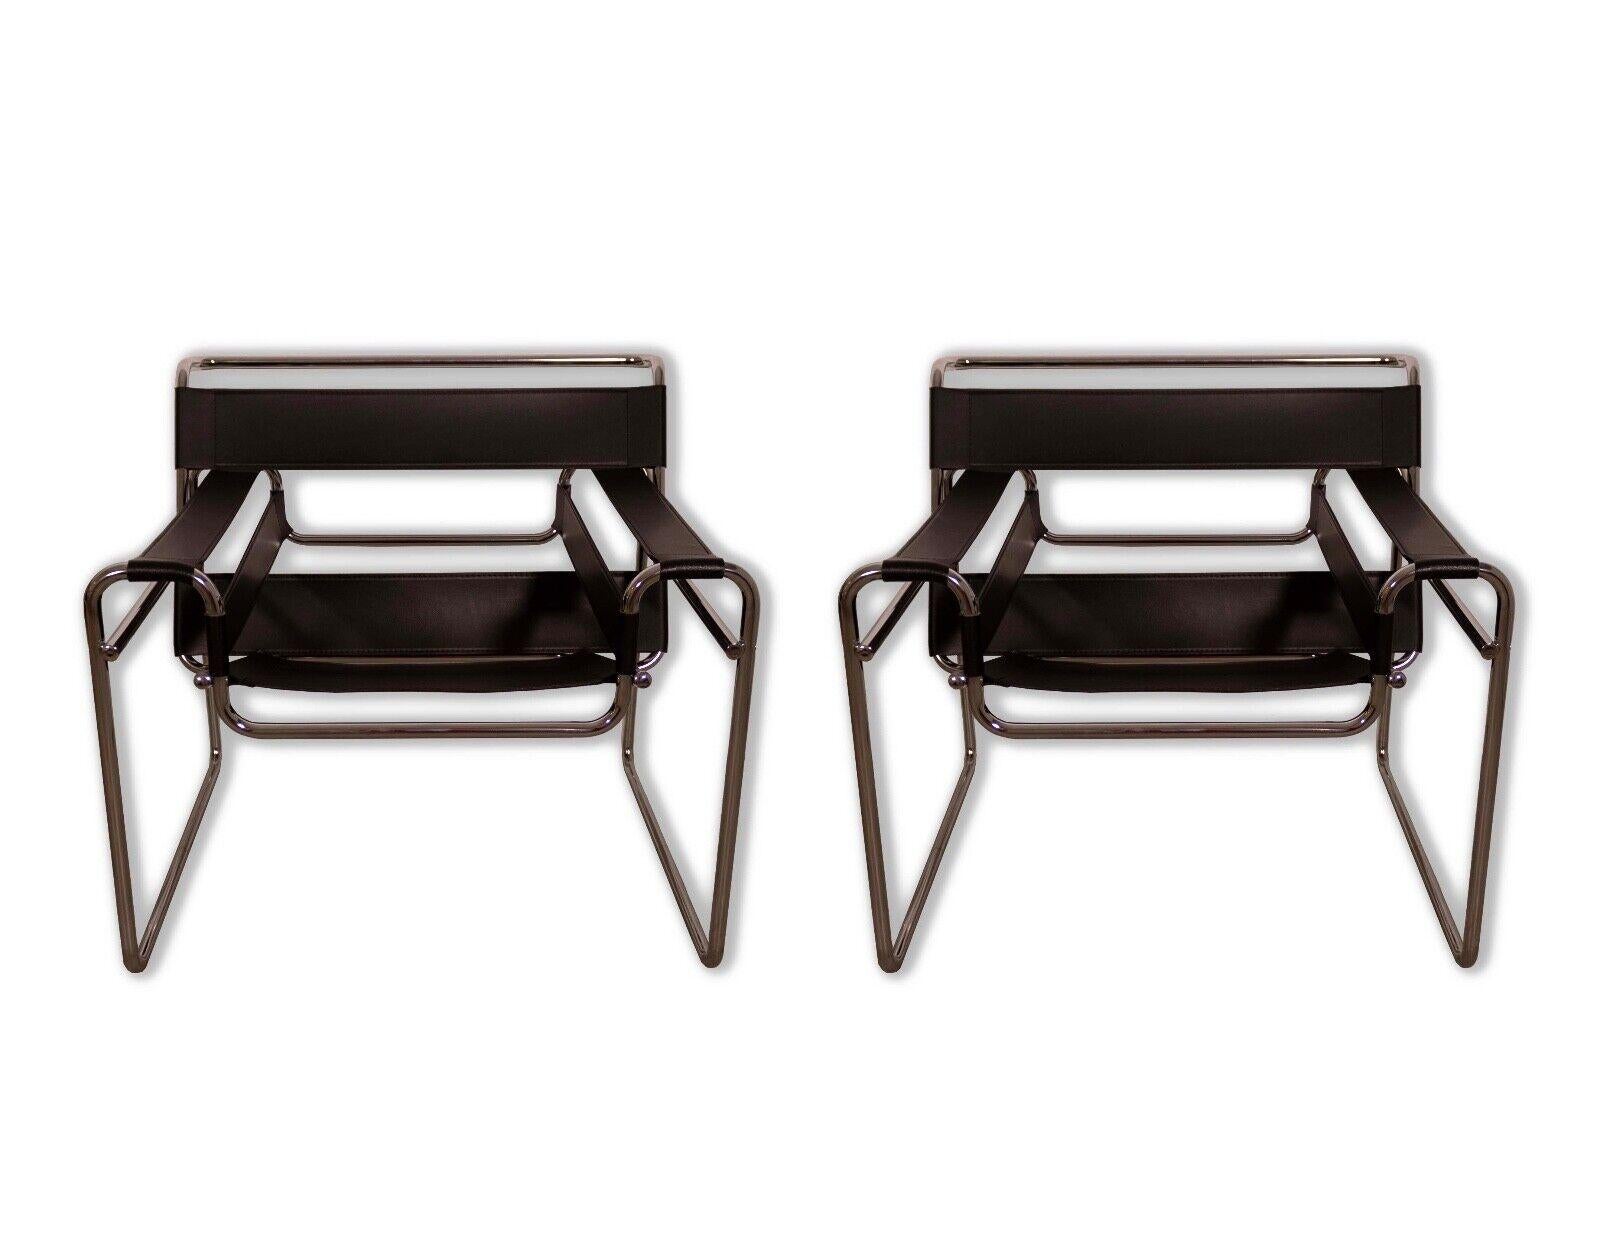 Cette paire de chaises en cuir noir et chrome de style Wassily exsude l'élégance intemporelle du design moderne du milieu du siècle. Fabriquées avec un mélange parfait de cadres chromés élégants et de rembourrage en cuir noir souple, ces chaises